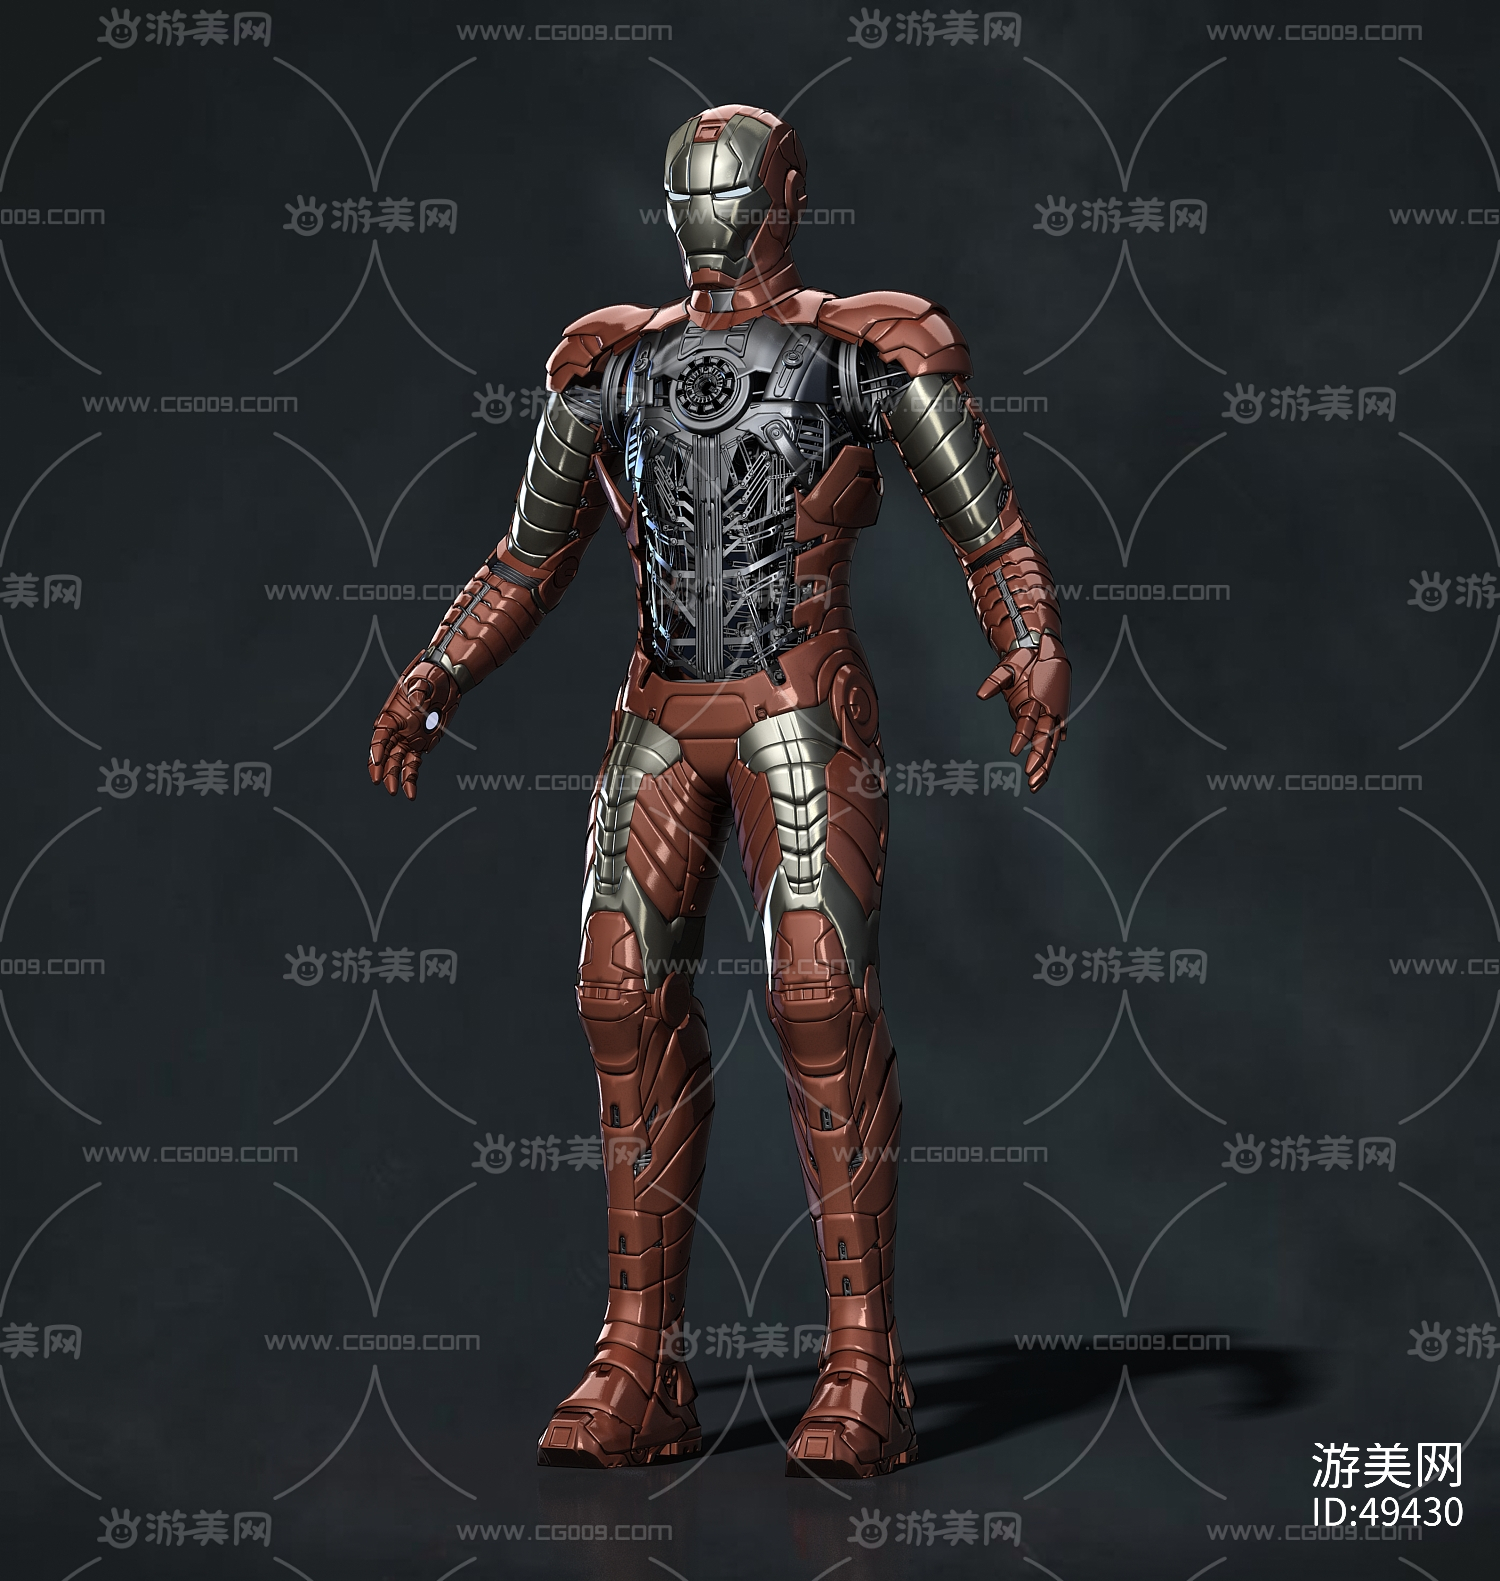 钢铁侠mk5 内部结构 机械 机械骨架 机器人 超级英雄